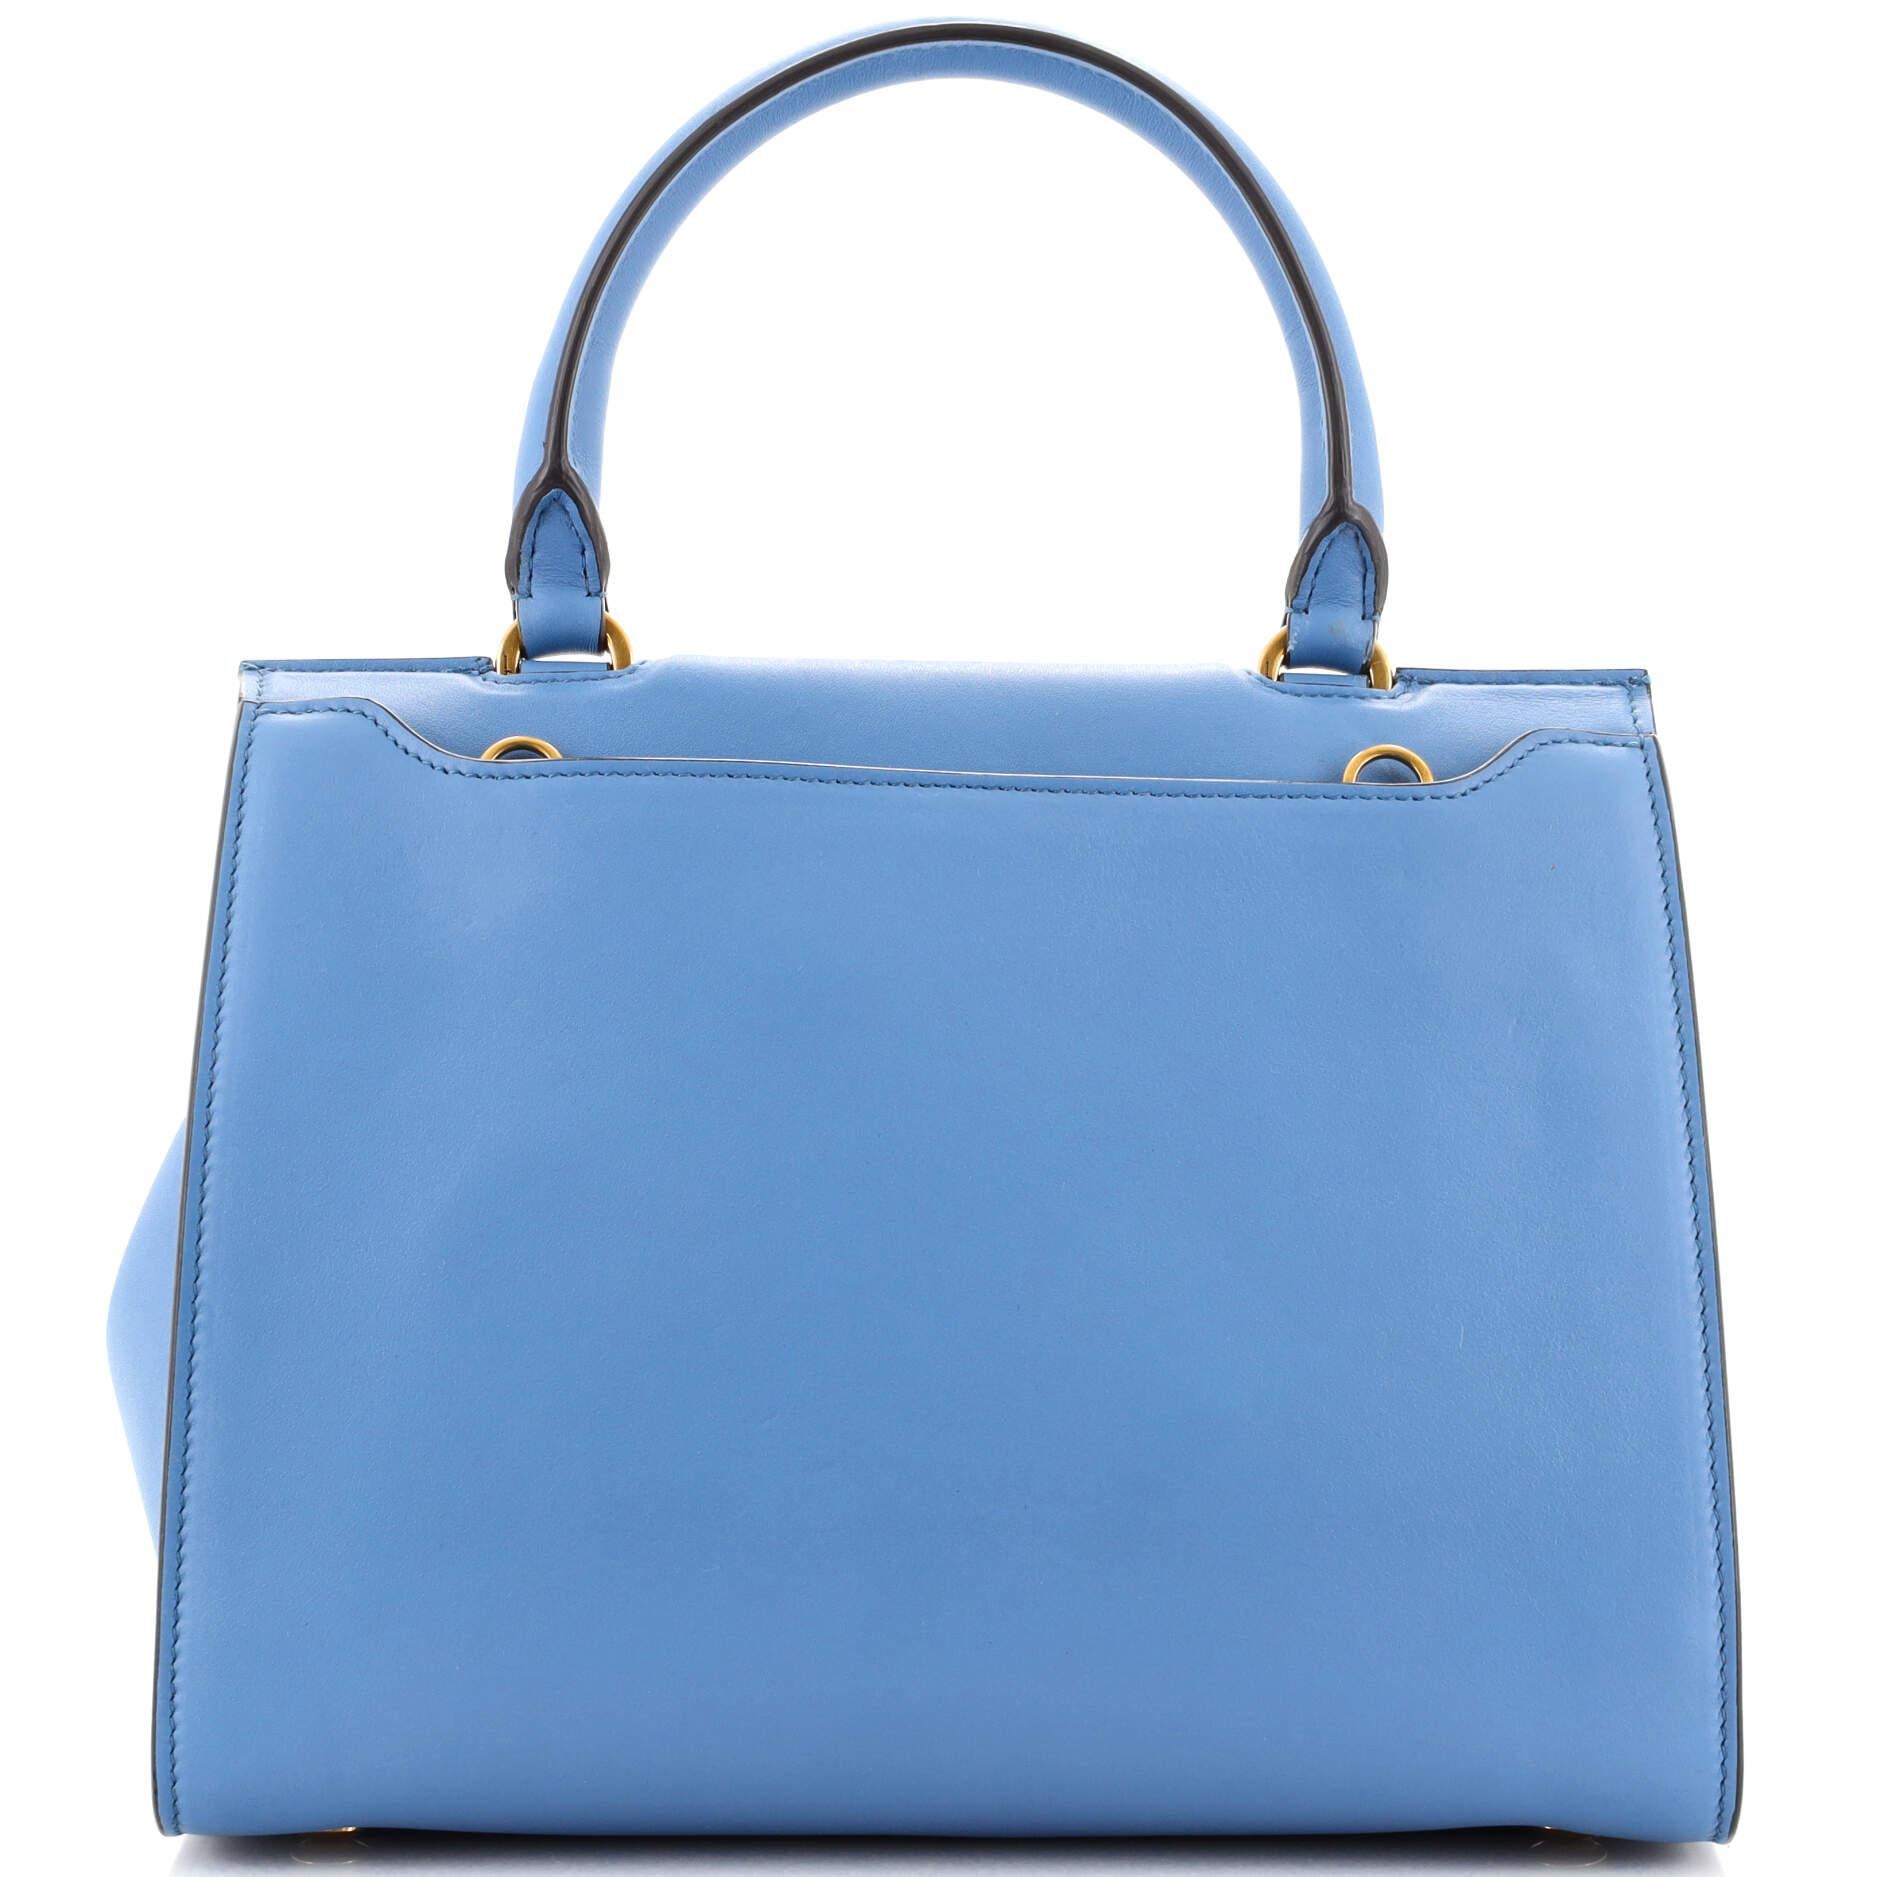 Blue Salvatore Ferragamo Trifolio Top Handle Bag Leather Small